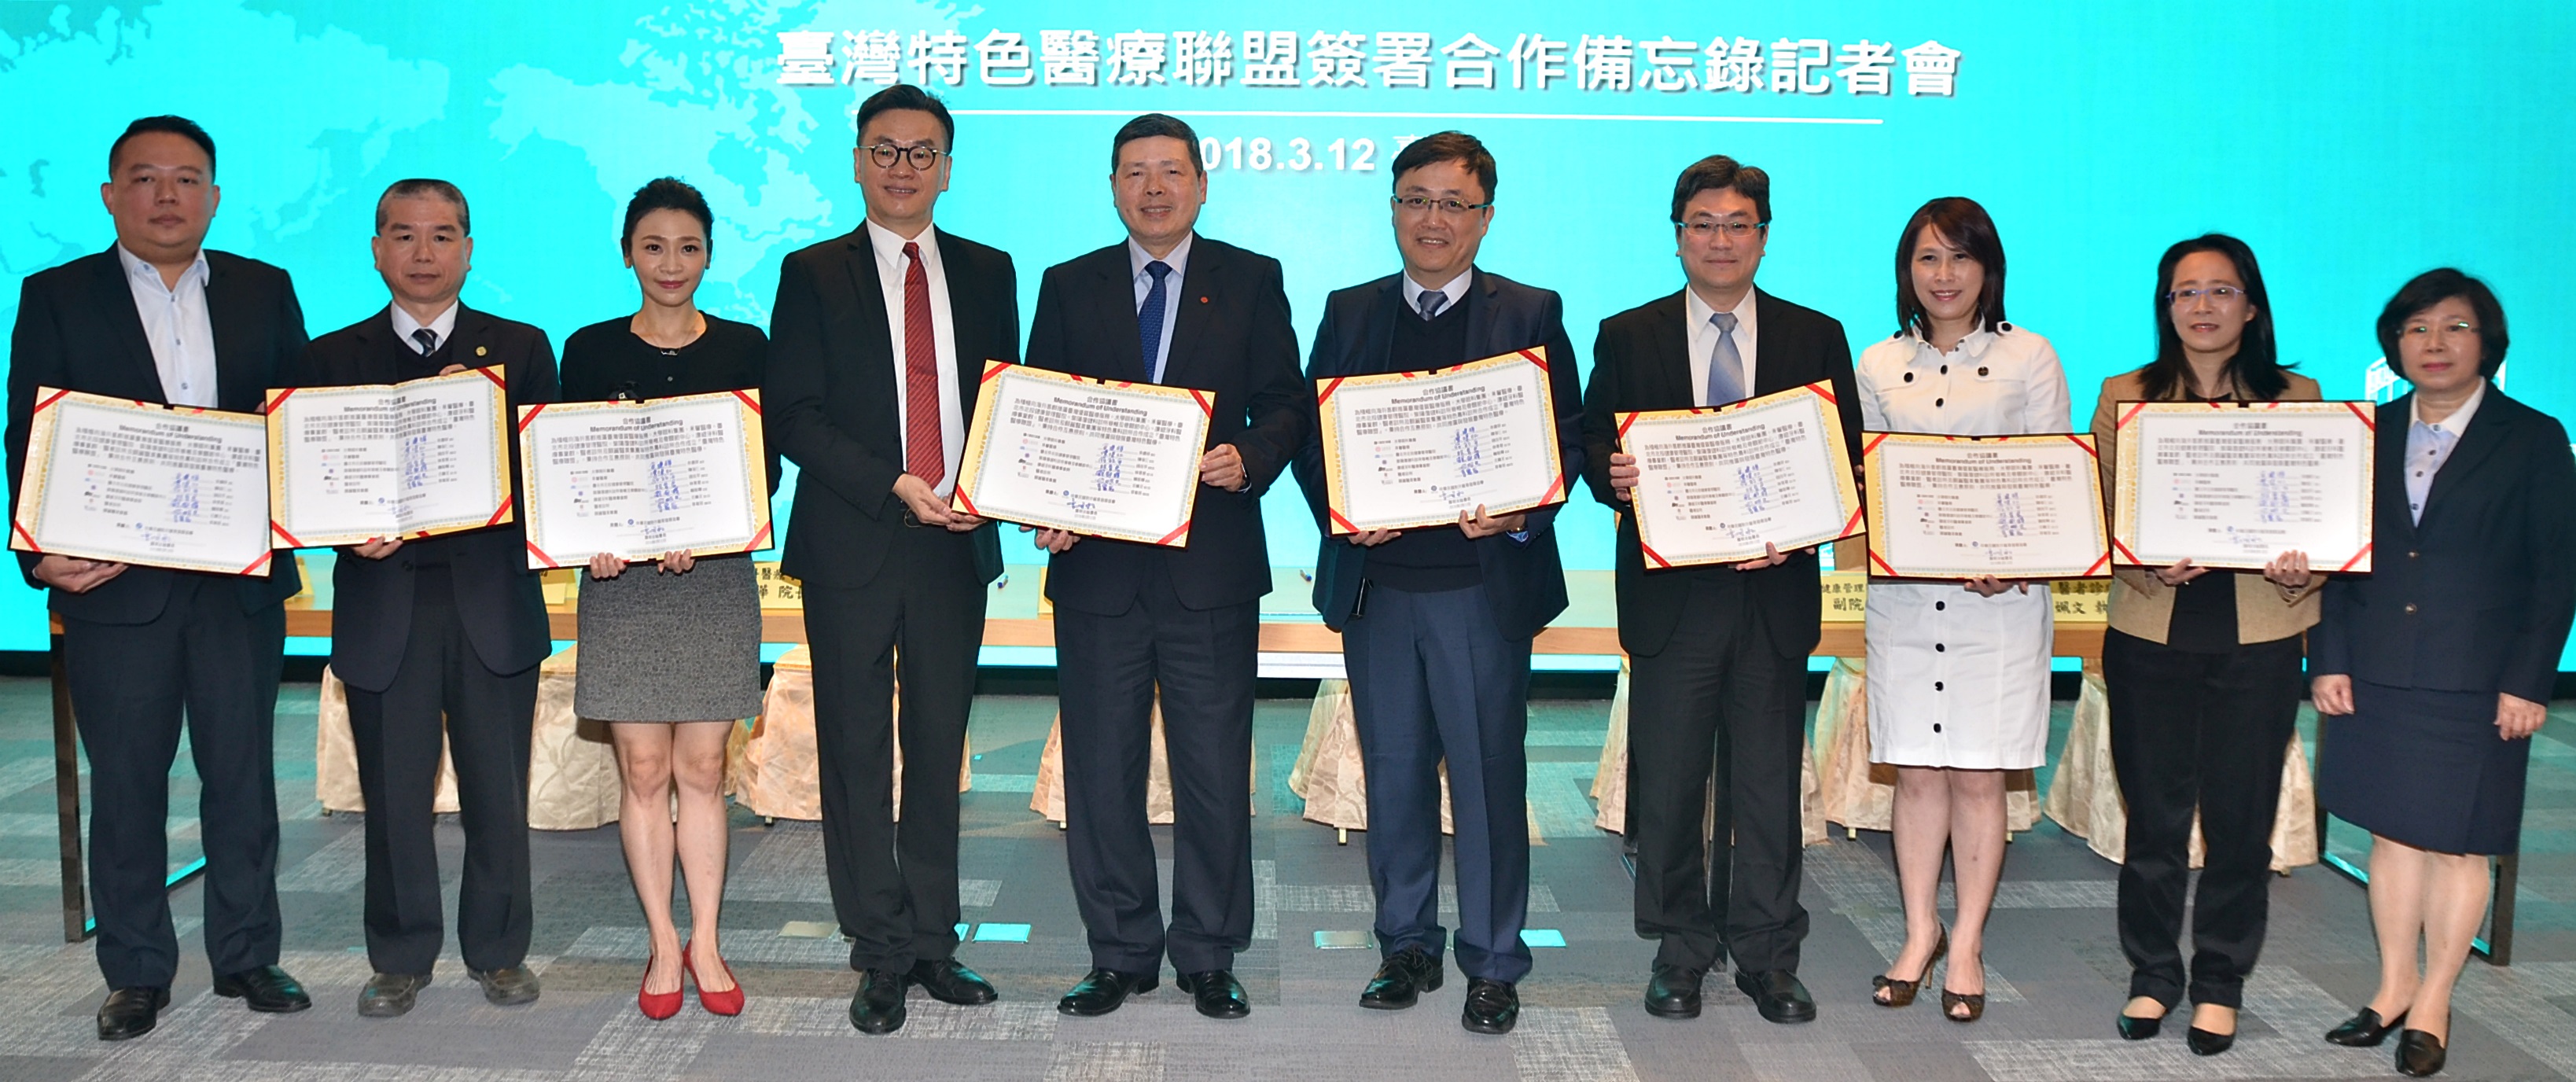 外貿協會見證「臺灣特色醫療聯盟」成立合作開發國際客群